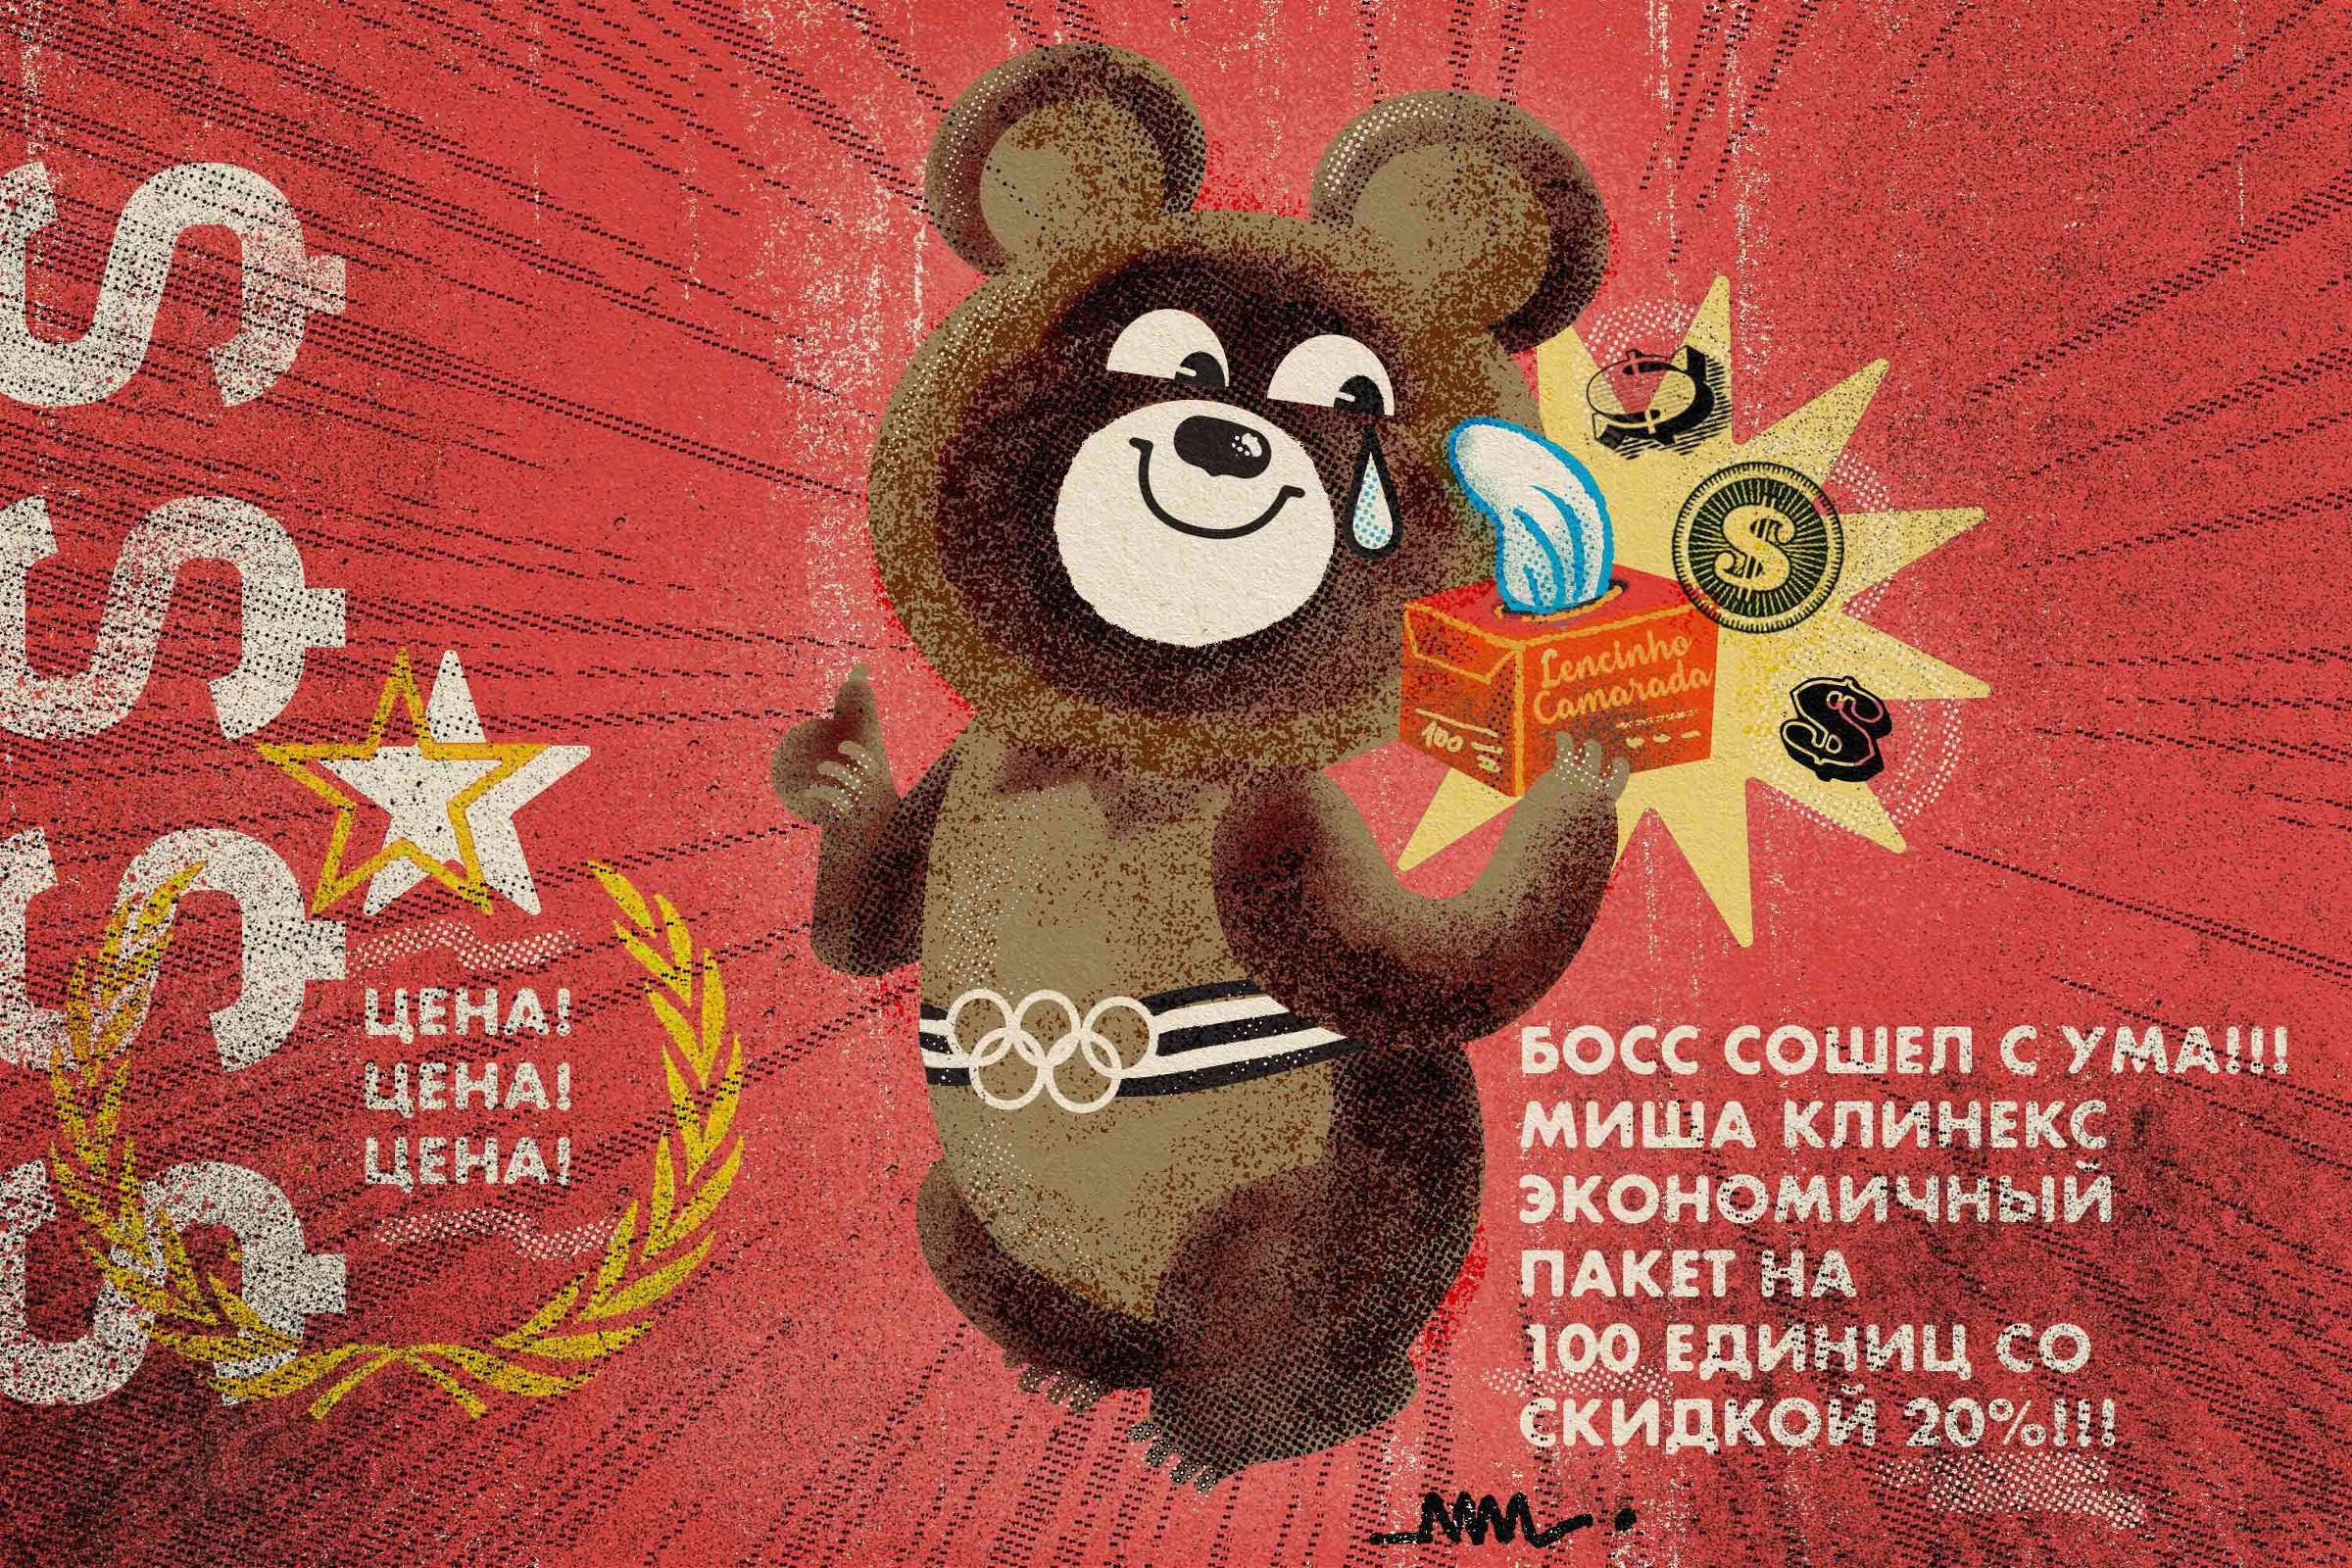 Morre, aos 84 anos, o criador do urso Misha, mascote das Olimpíadas de  Moscou - Tribuna da Imprensa Livre